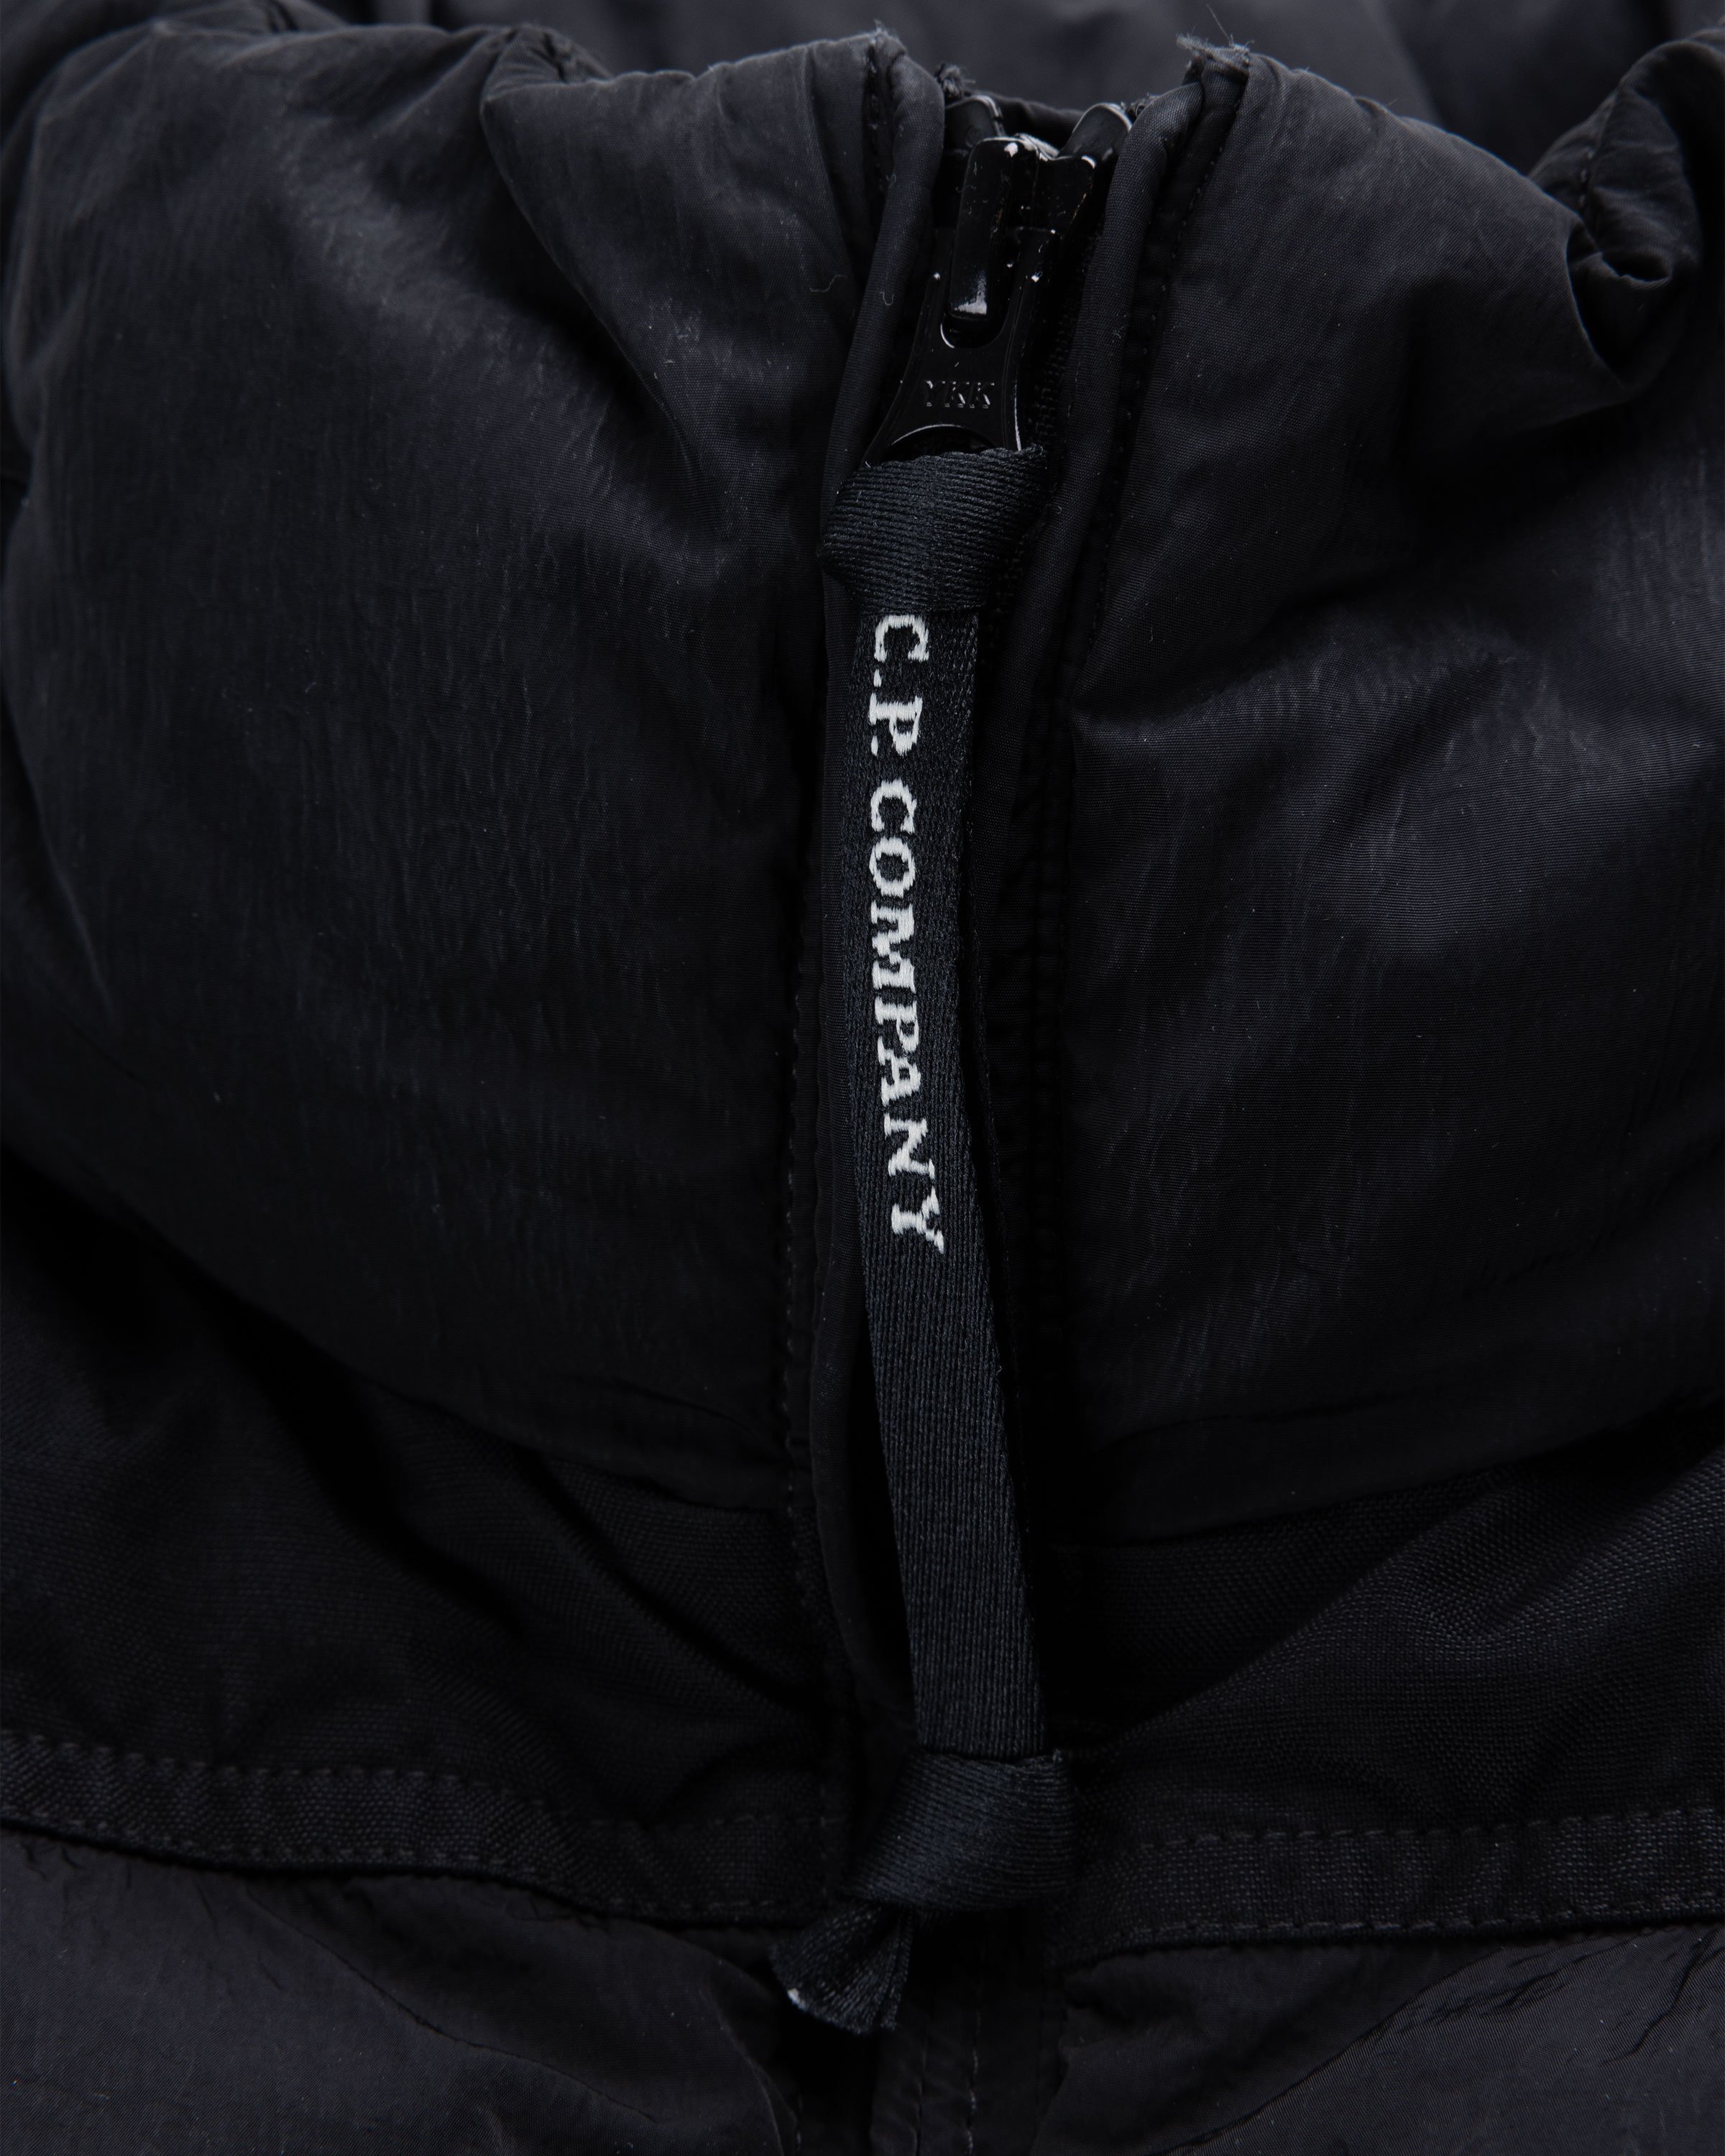 C.P. Company - Short Jacket Black - Clothing - Black - Image 5